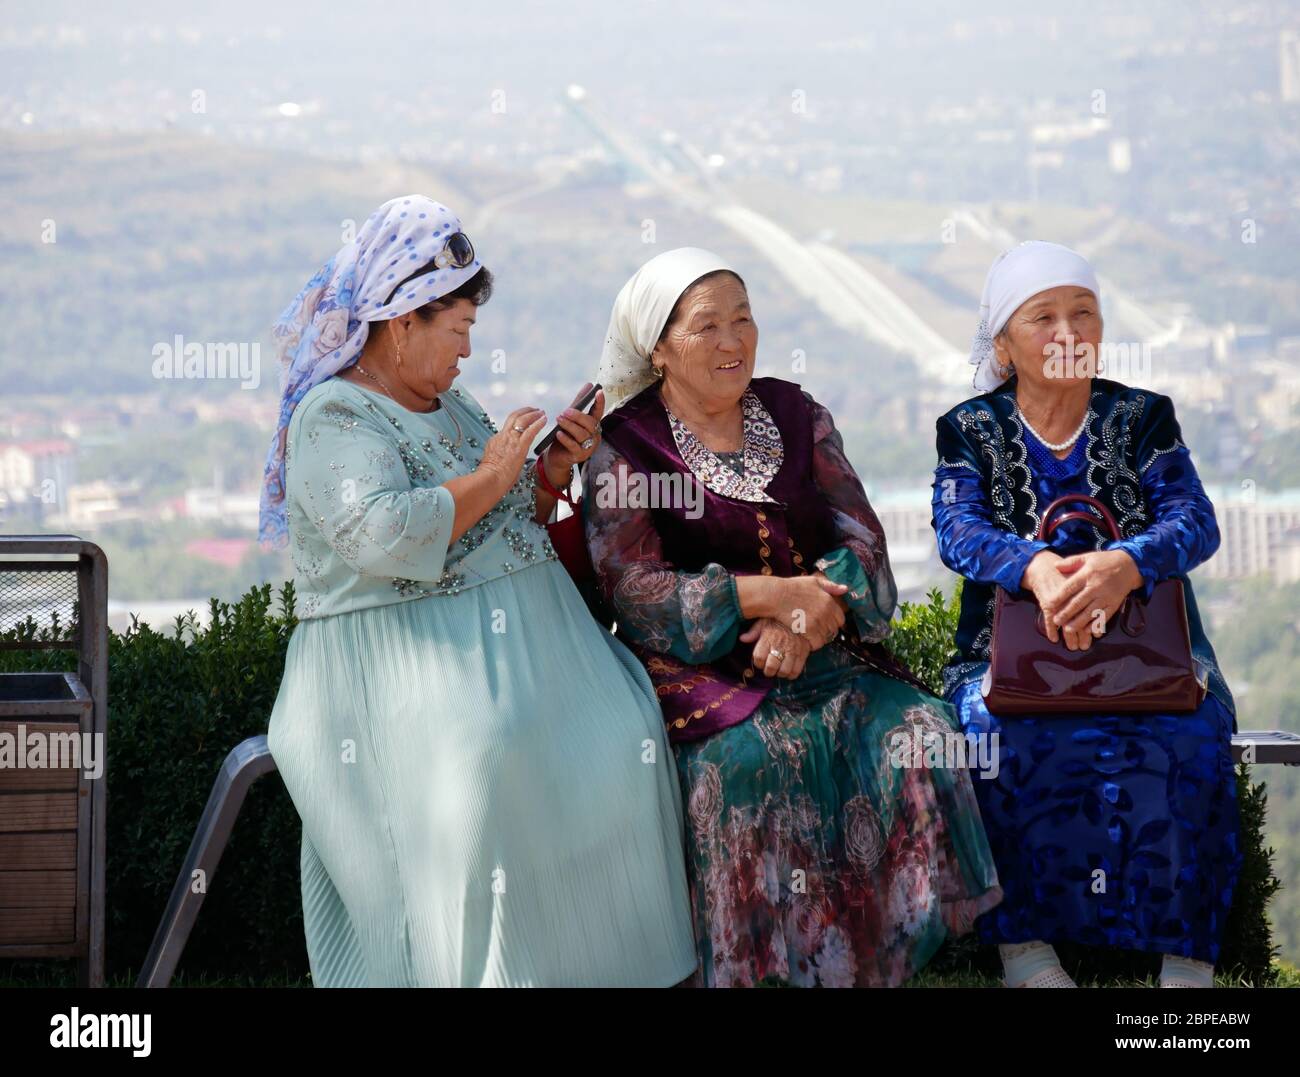 Almaty, Kazakhstan - 3 settembre 2019: Tre donne anziane riposano su un punto di vista in Almaty mentre una di loro sta usando il suo telefono cellulare. Foto Stock